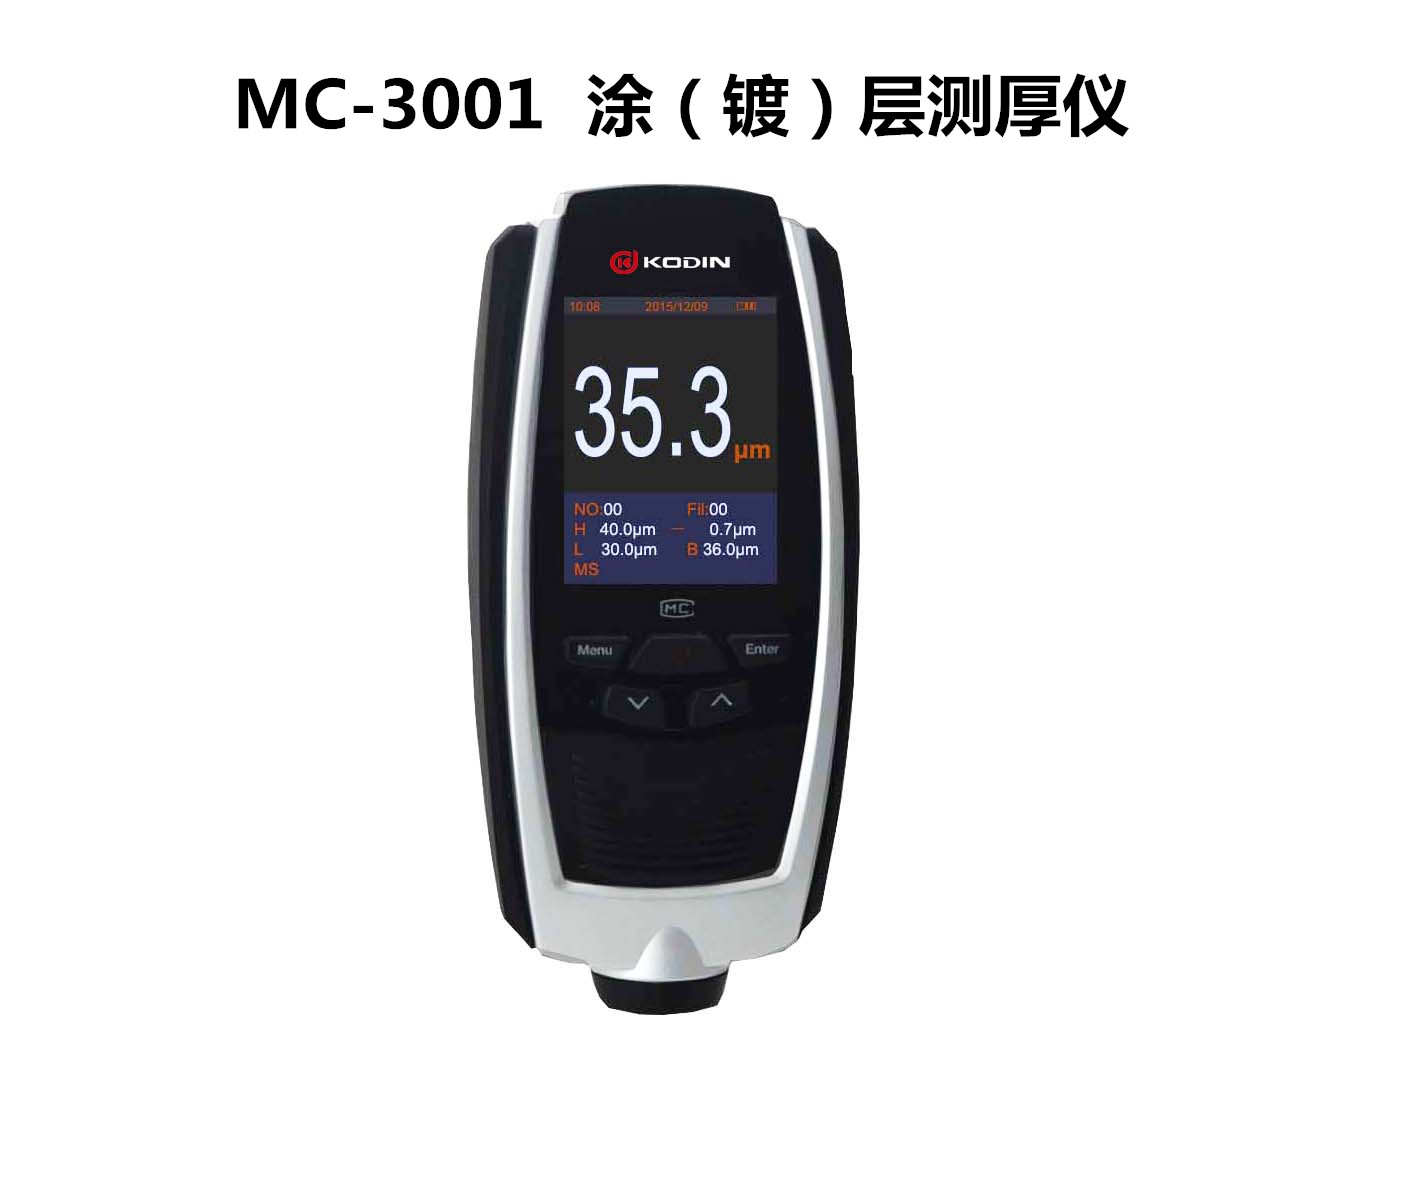 北京市科电MC-3001系列涂层测厚仪厂家科电MC-3001系列涂层测厚仪；多种探头，多种测量模式，精度高、准确度高、稳定性好